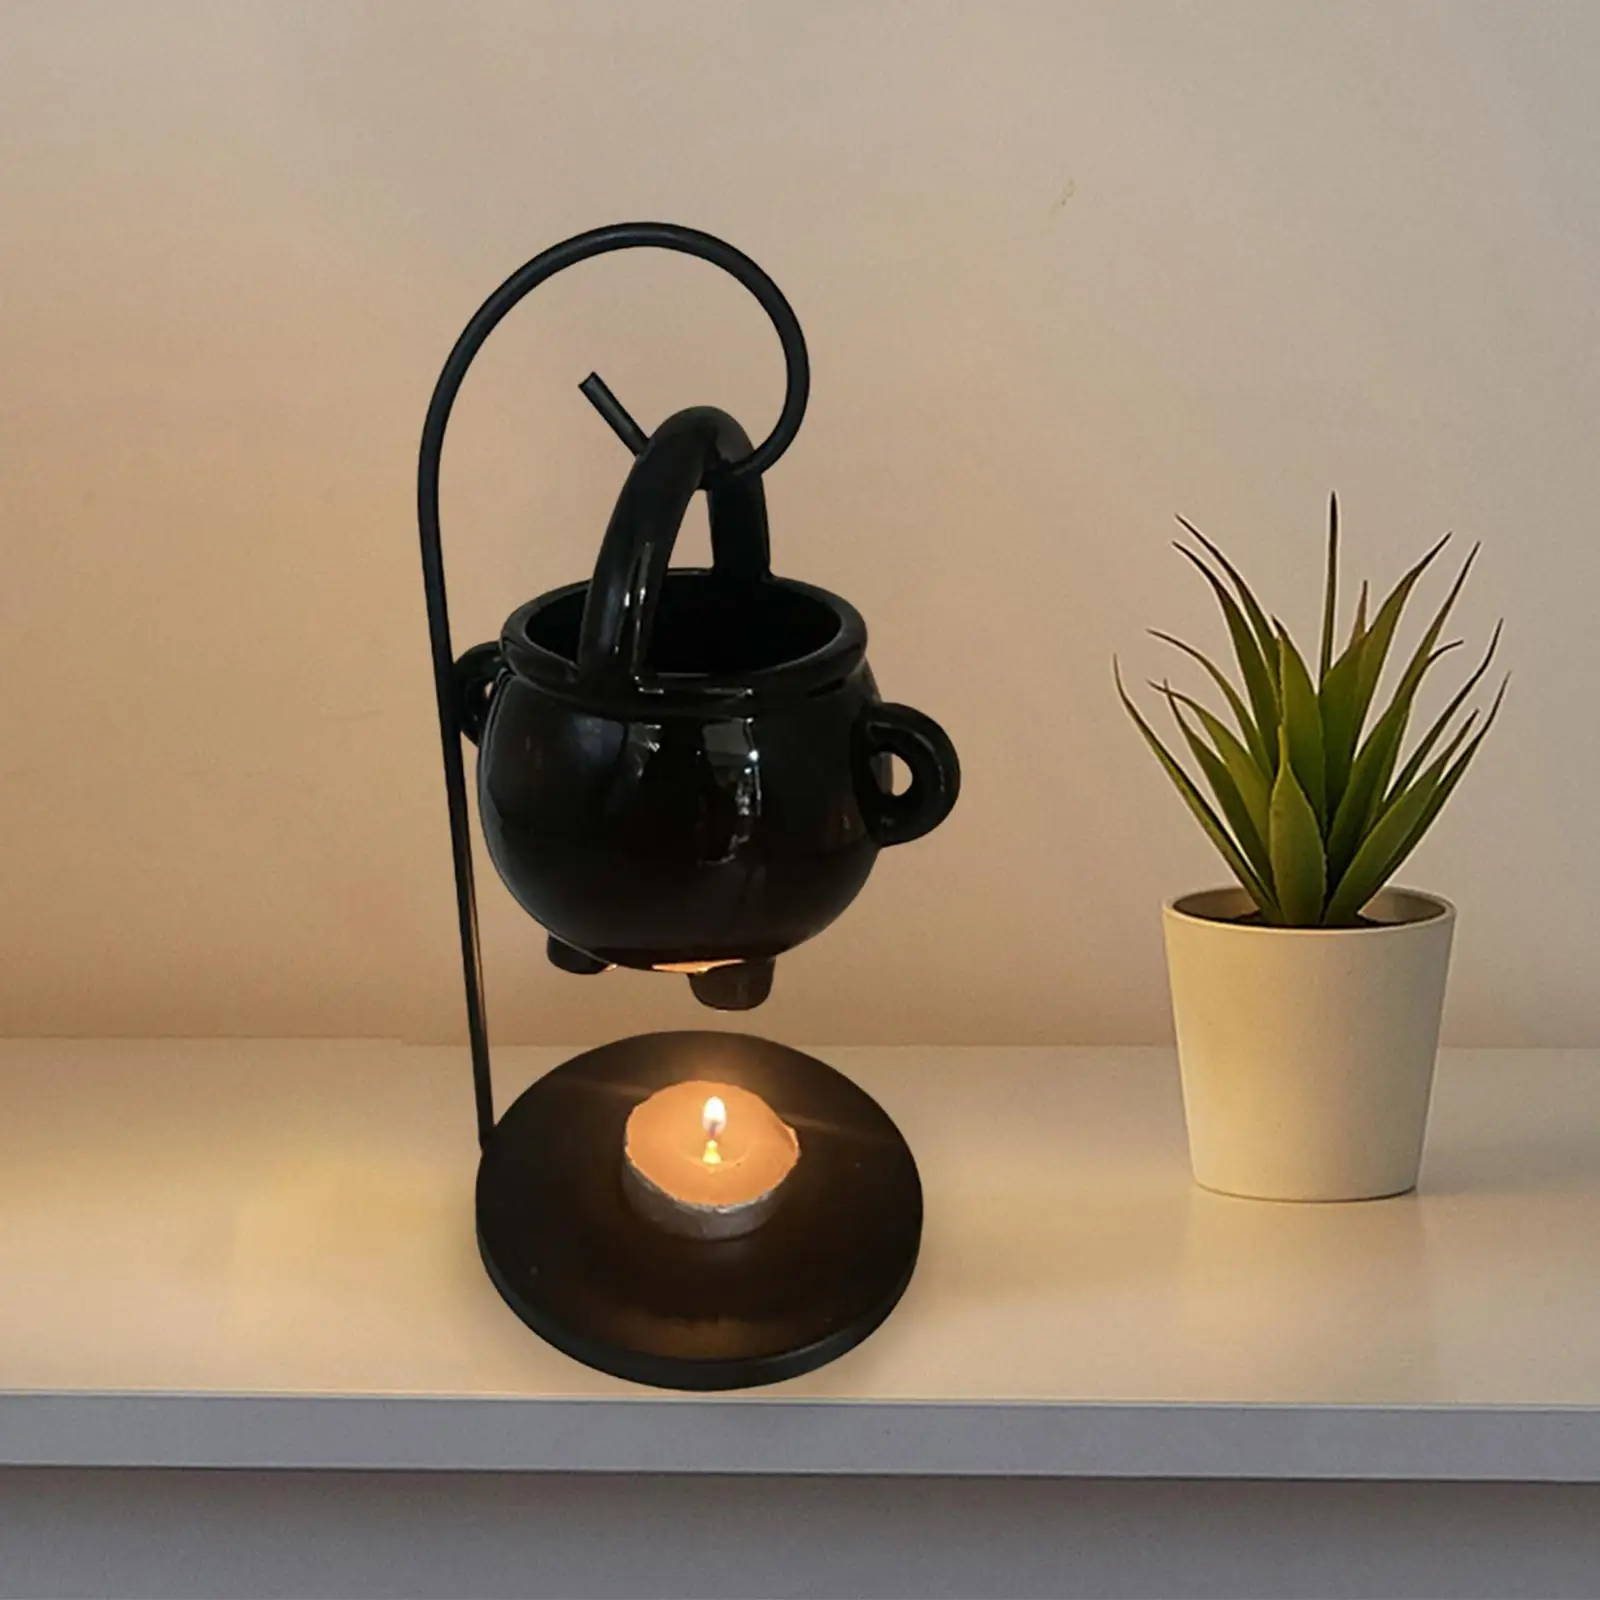 Hanging Tealight Candles Holder Melt Fragrance Gift Warmer Ceramic Essential Oil Burner Diffuser for Yoga Living Room